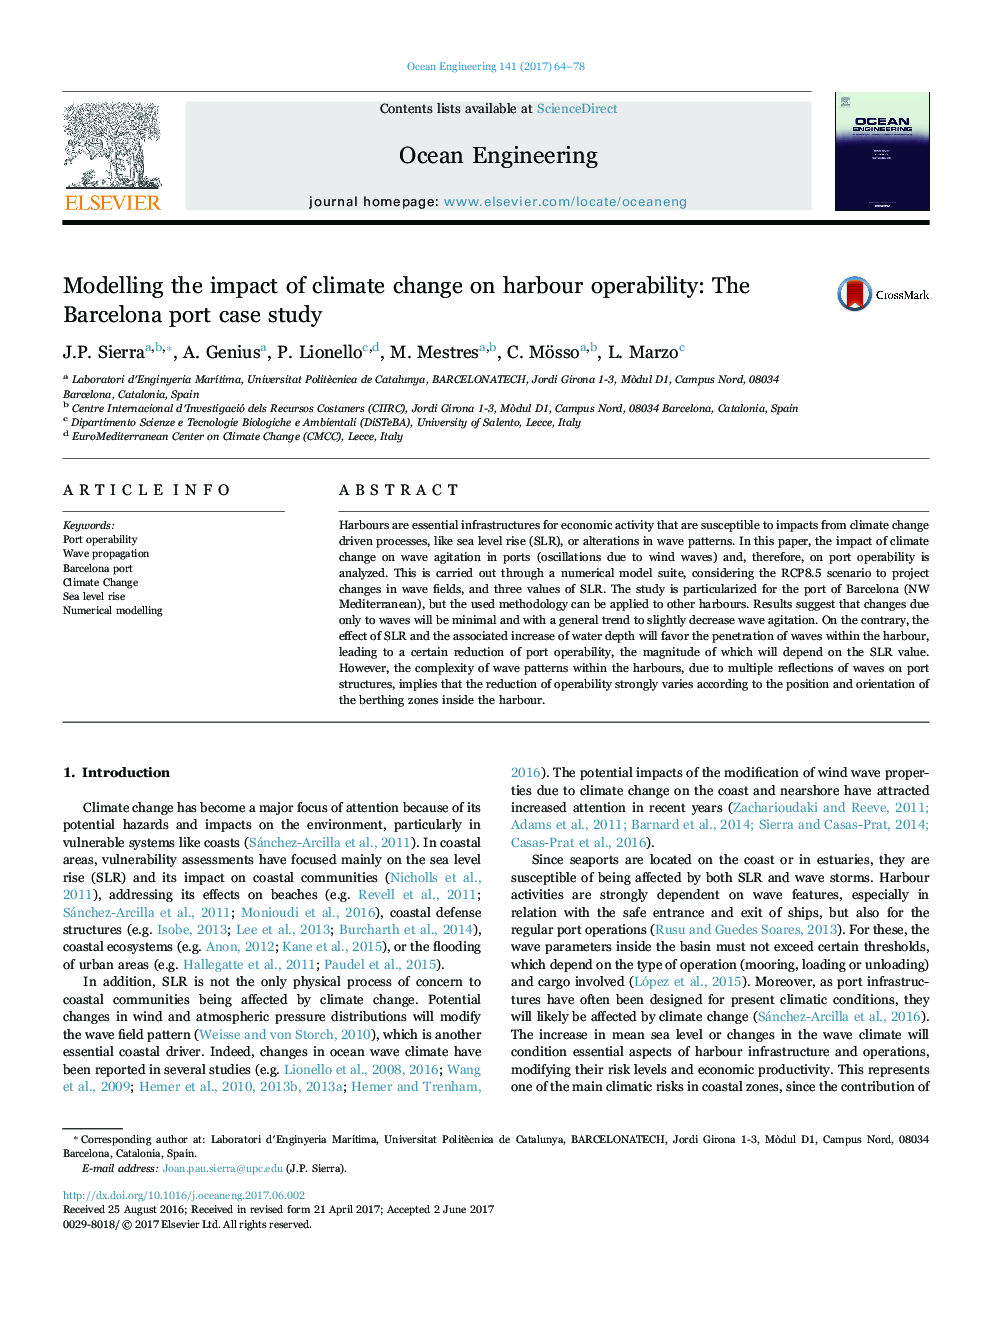 مدل سازی تاثیر تغییرات آب و هوایی در عملکرد بندر: مطالعه موردی بندر بارسلونا 